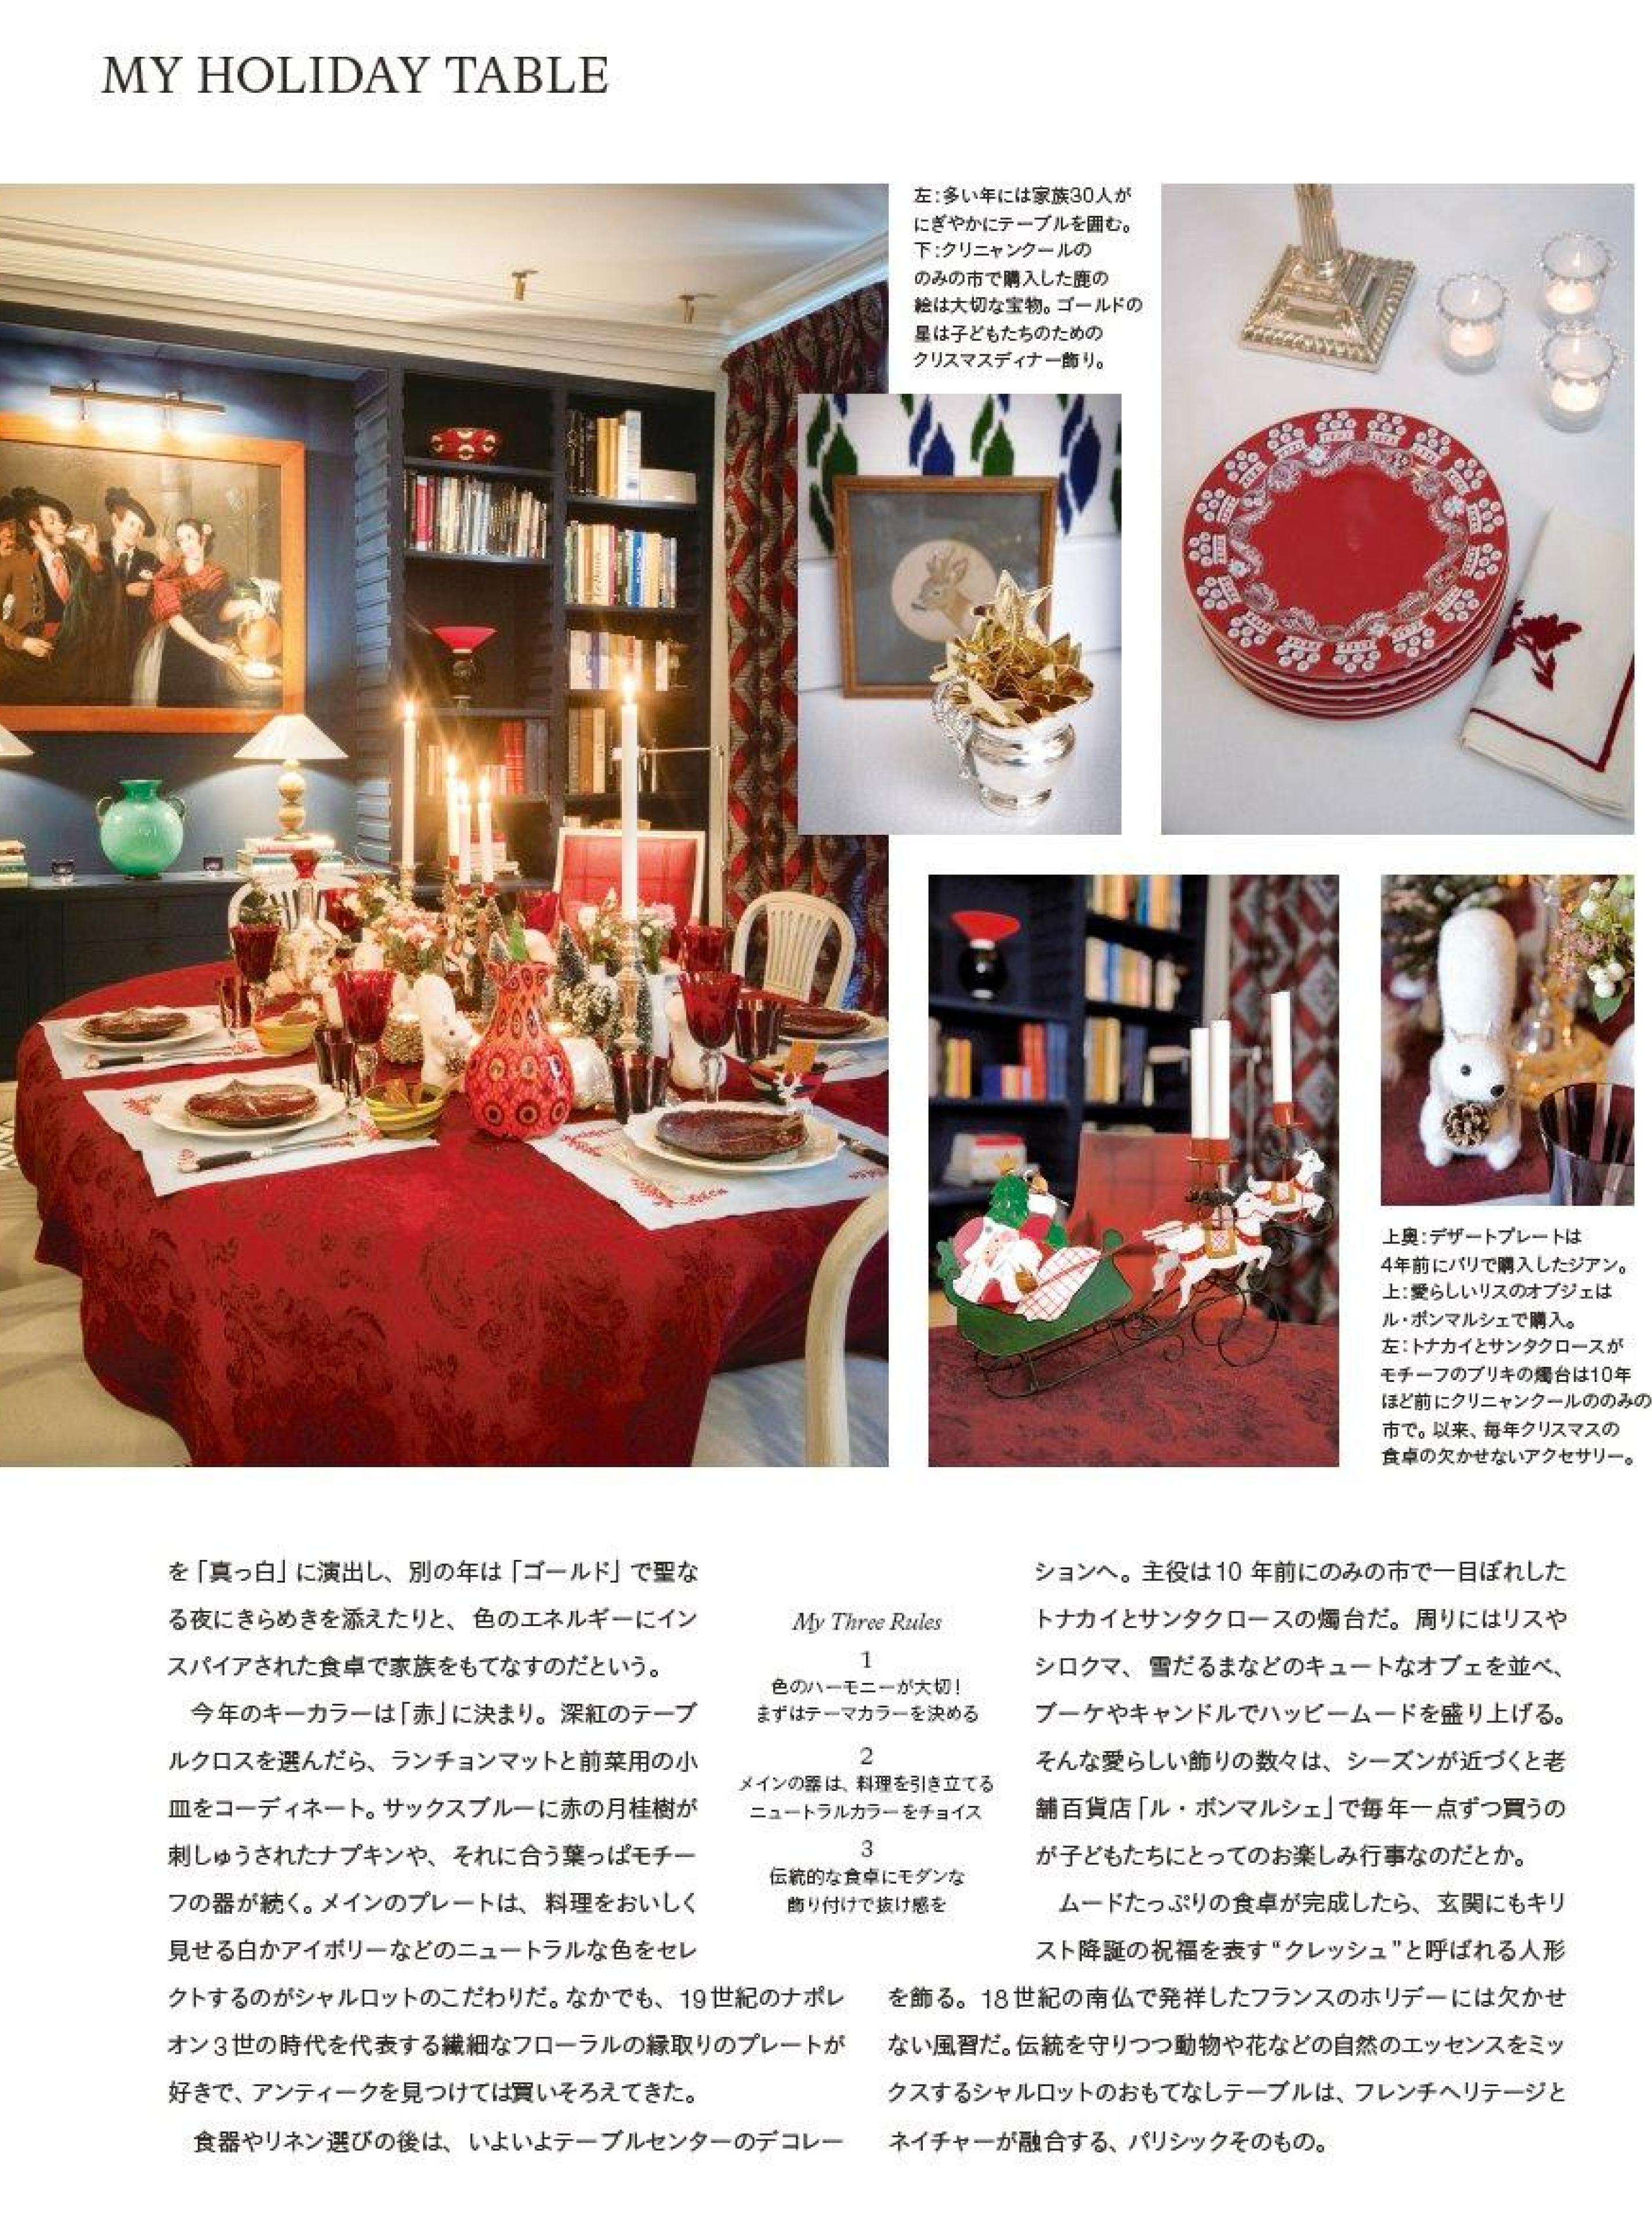 article de la table de charlotte de fayet pour le harpers bazaar japan magazine